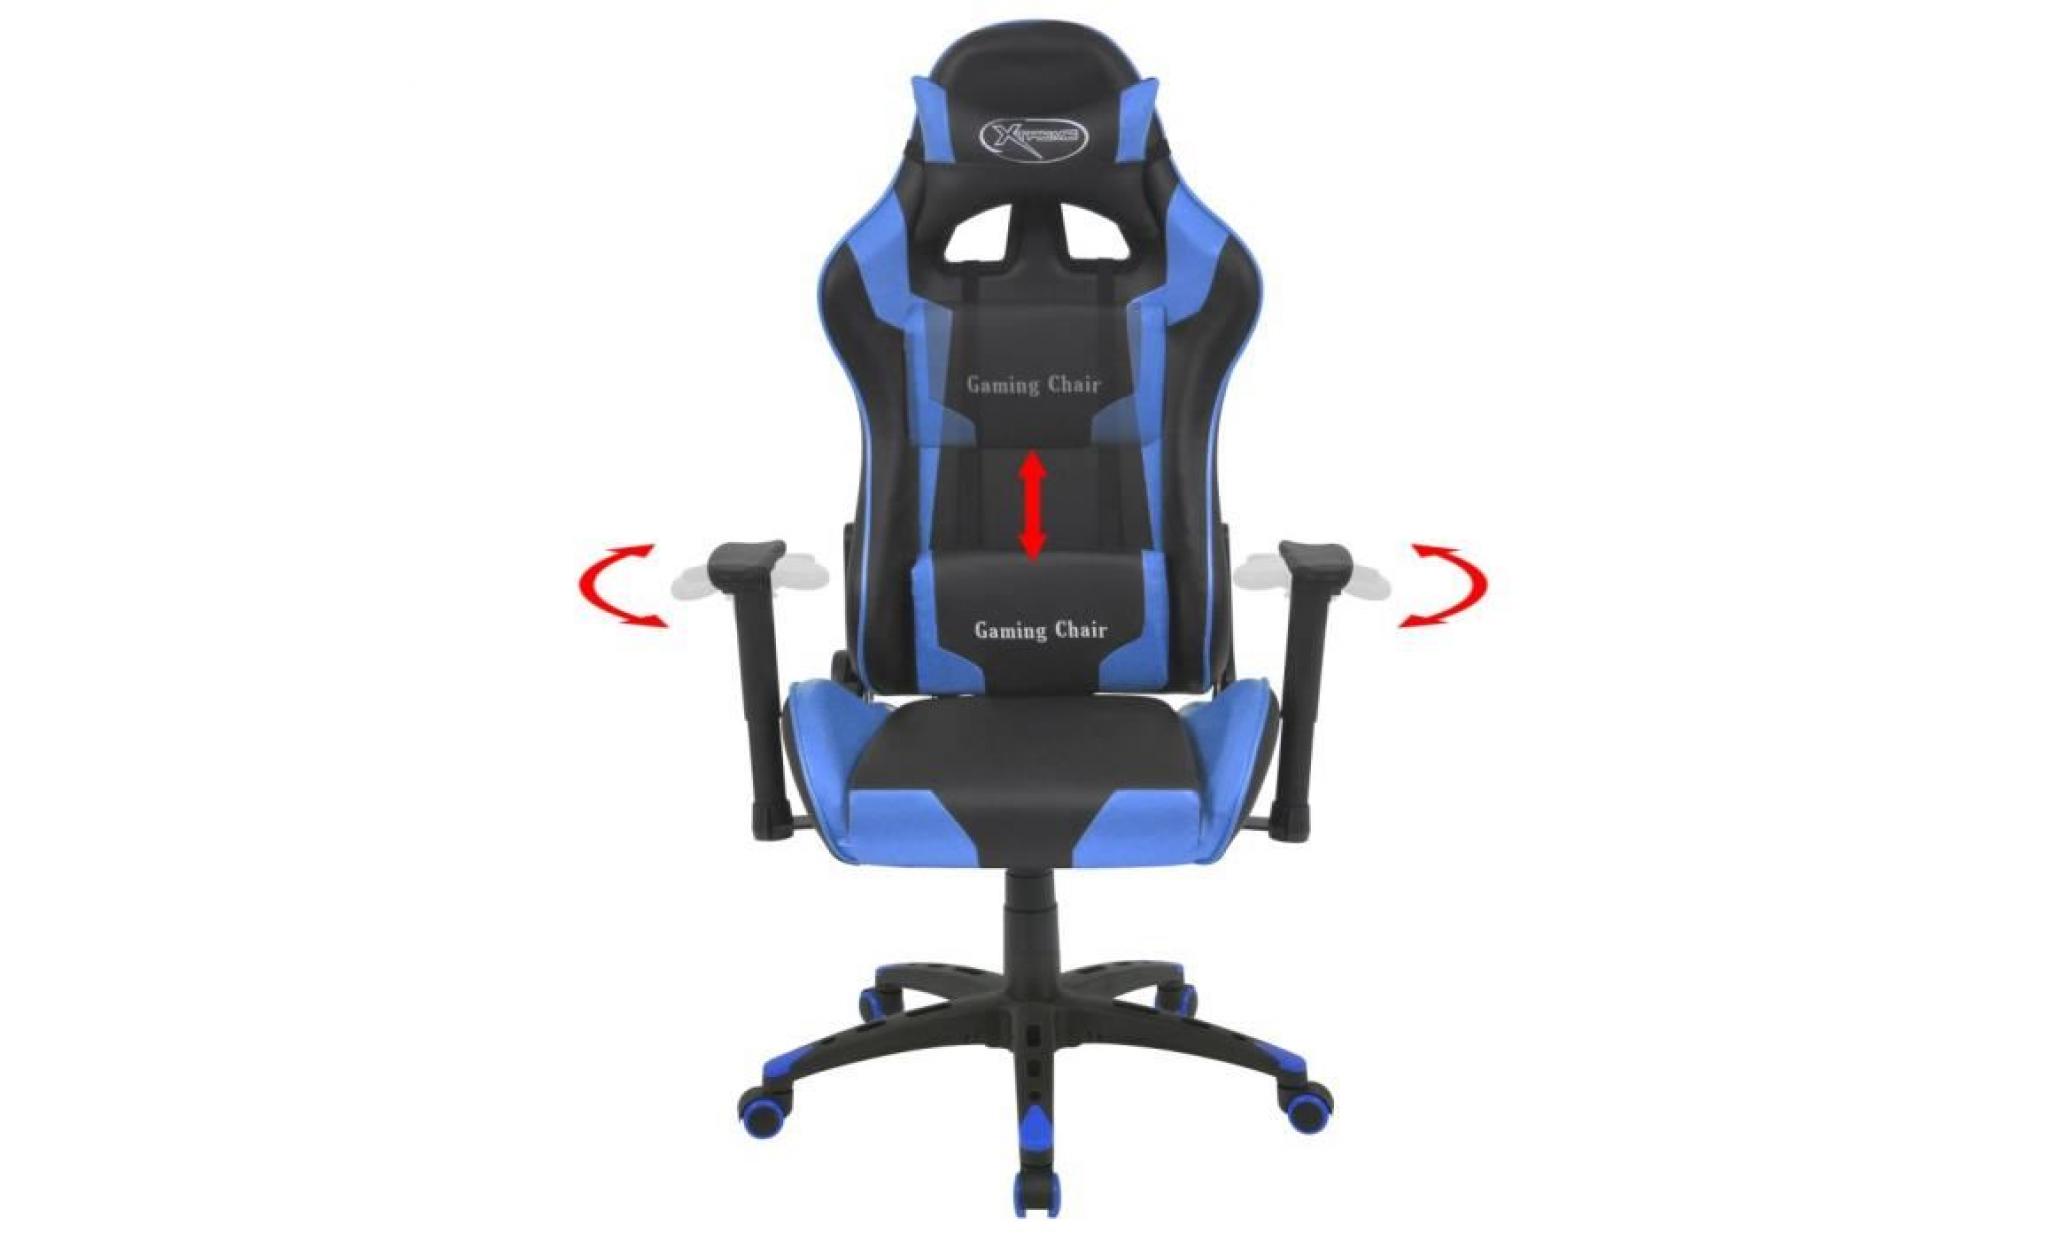 chaise de bureau inclinable fauteuil avec 5 roulettes en nylon flexibles cuir artificiel bleu pas cher